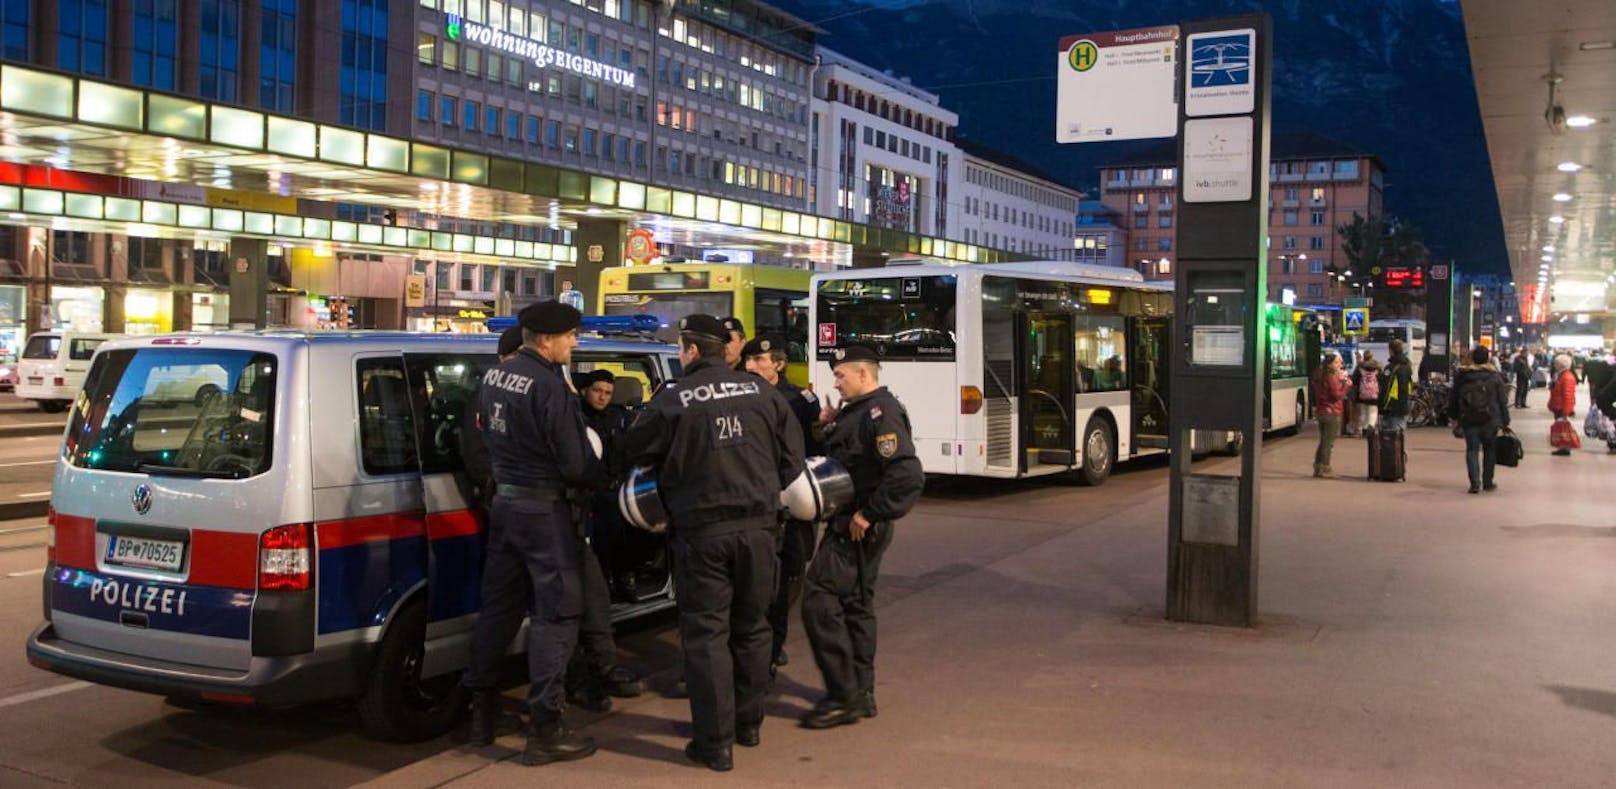 Die Attacke ereignete sich am Innsbrucker Hauptbahnhof.